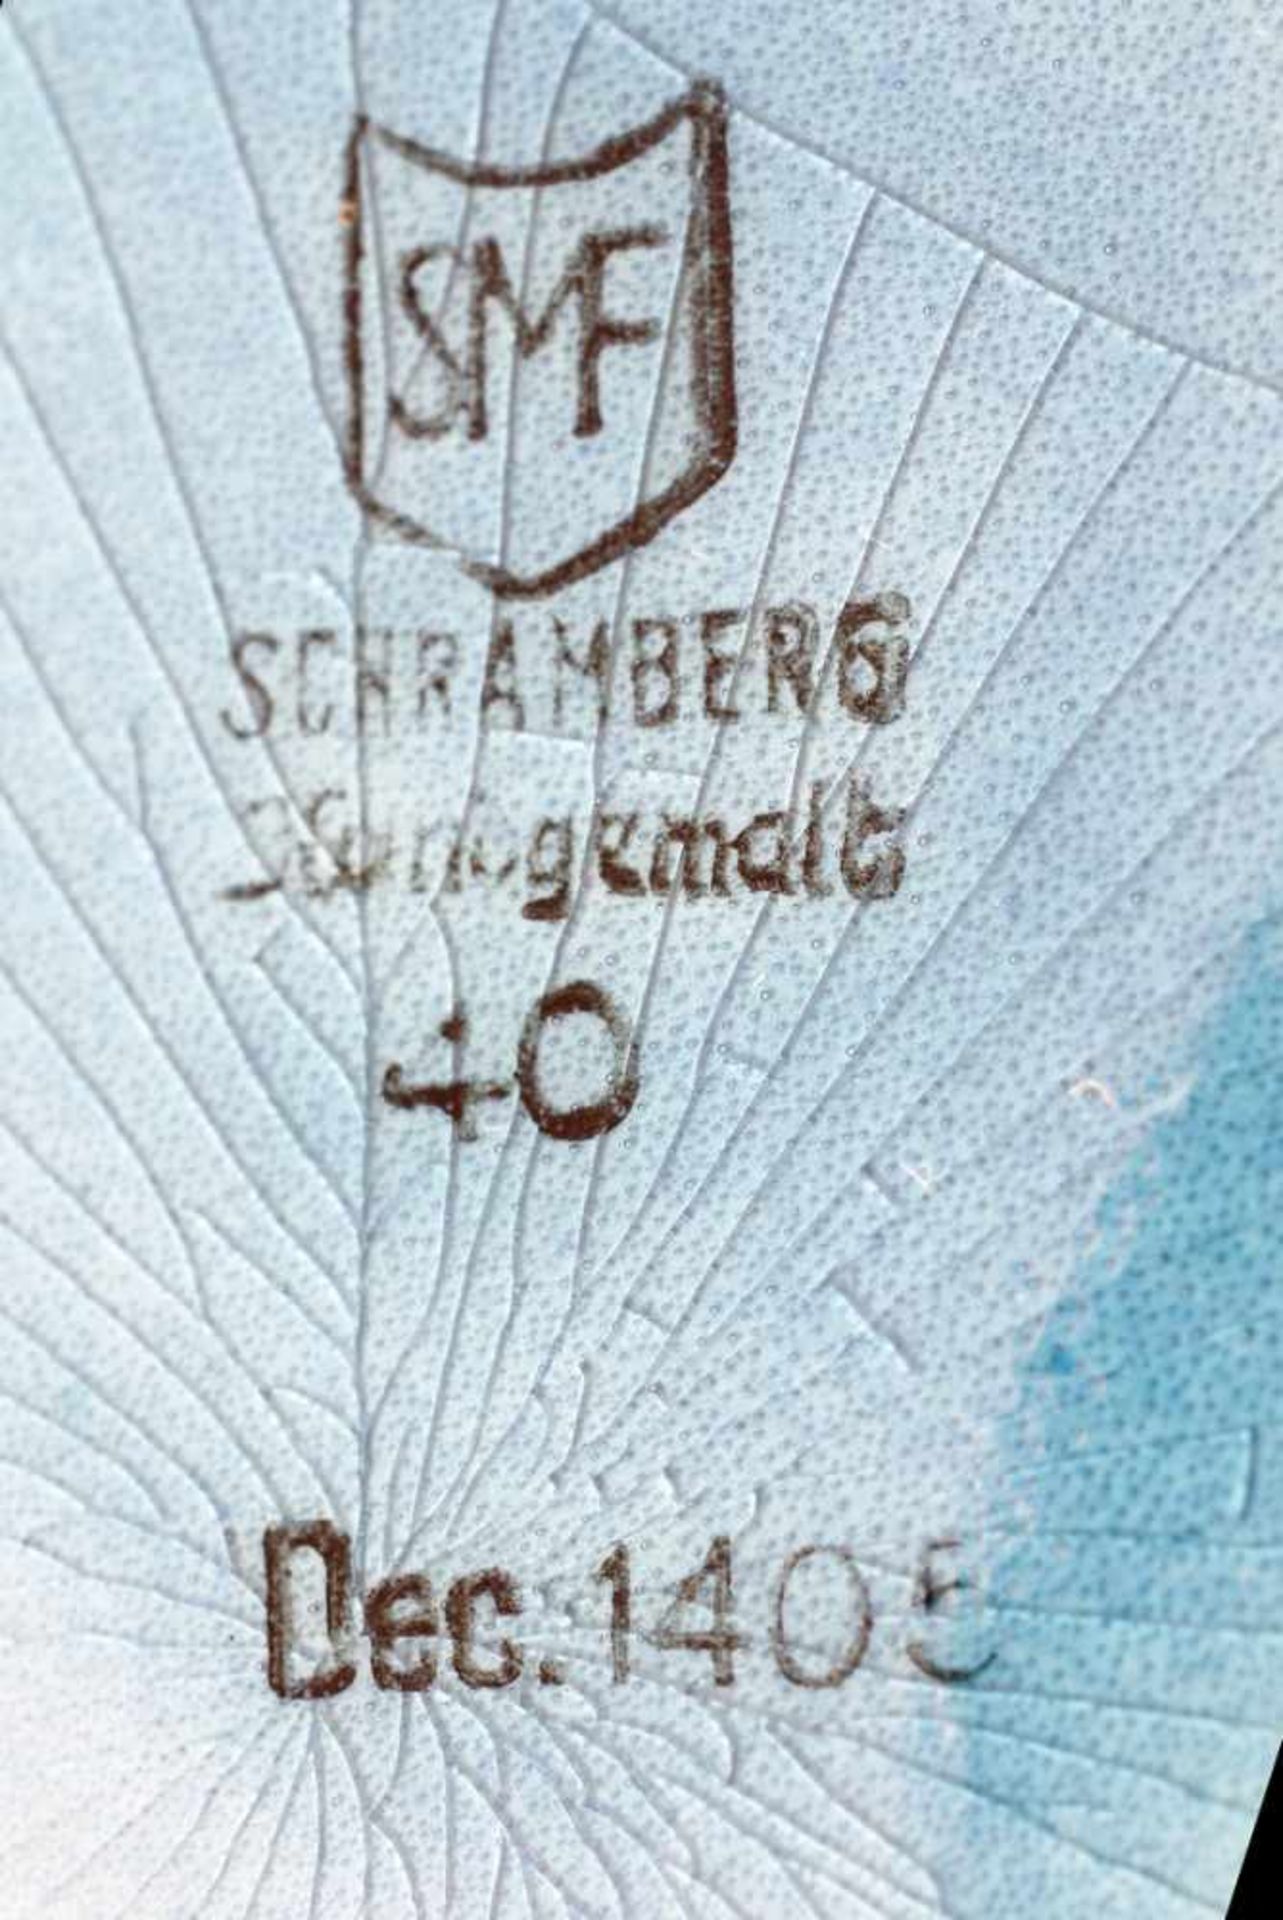 Schenkkrug Schramberg. Mitte 20. Jh., gemarkt SMF, Schramberger Majolika Fabrik, Dekor-Nr. 1405, - Bild 2 aus 2